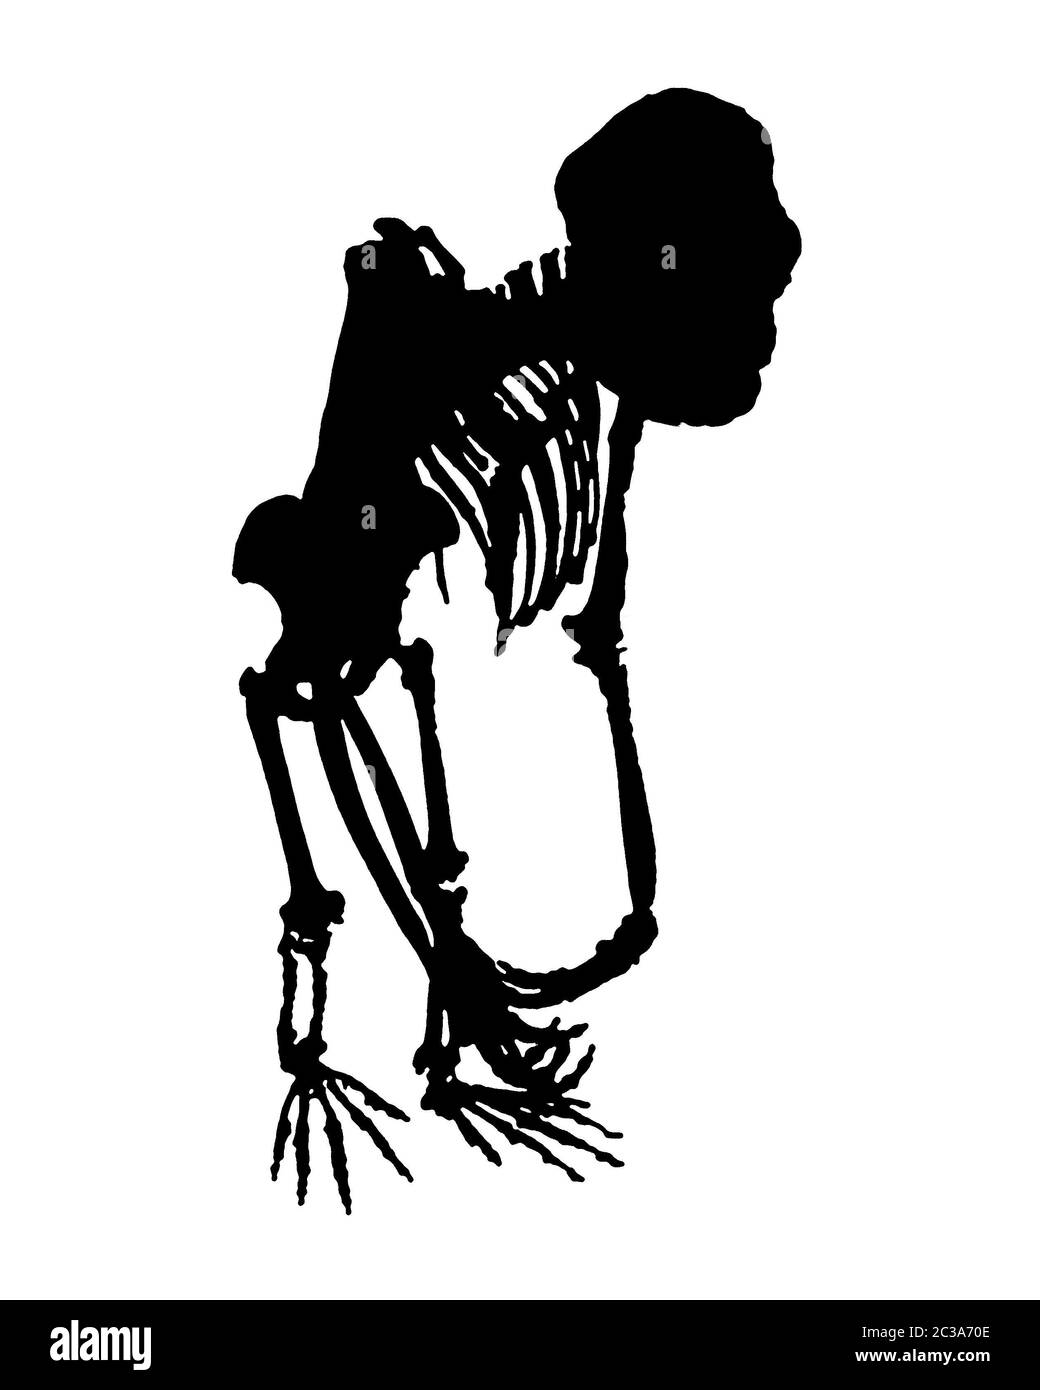 Monkey Full Body Skeleton Isolated Graphic Stock Photo